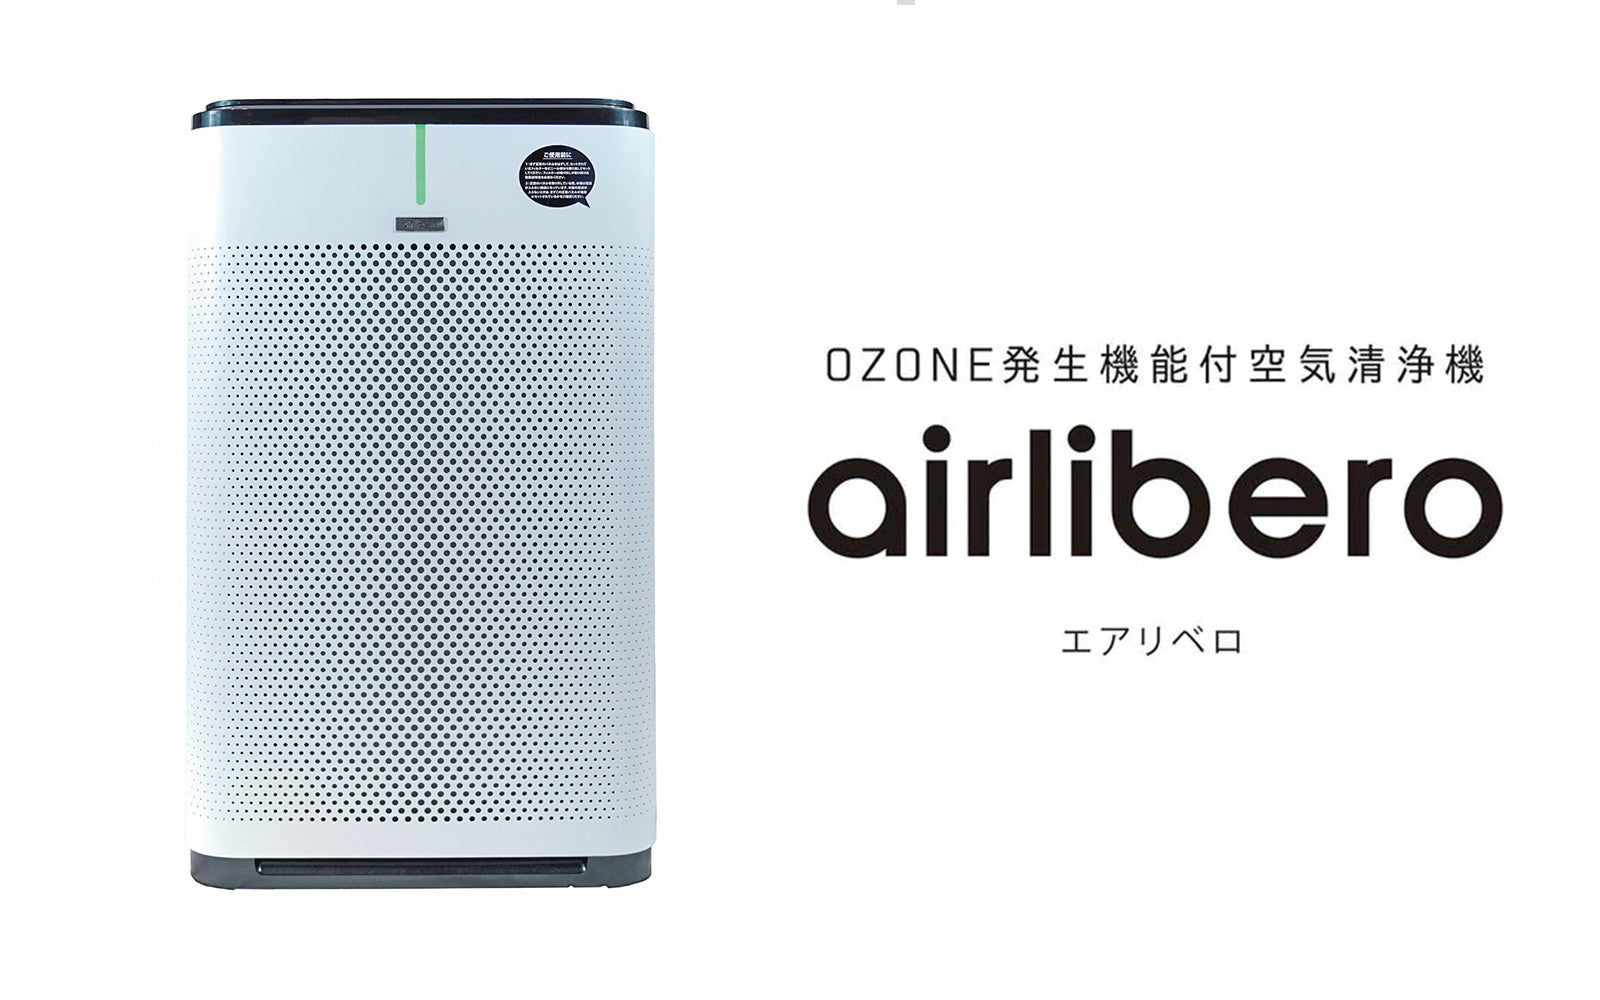 オゾン発生器付空気清浄機 エアリベロ - オゾンマート